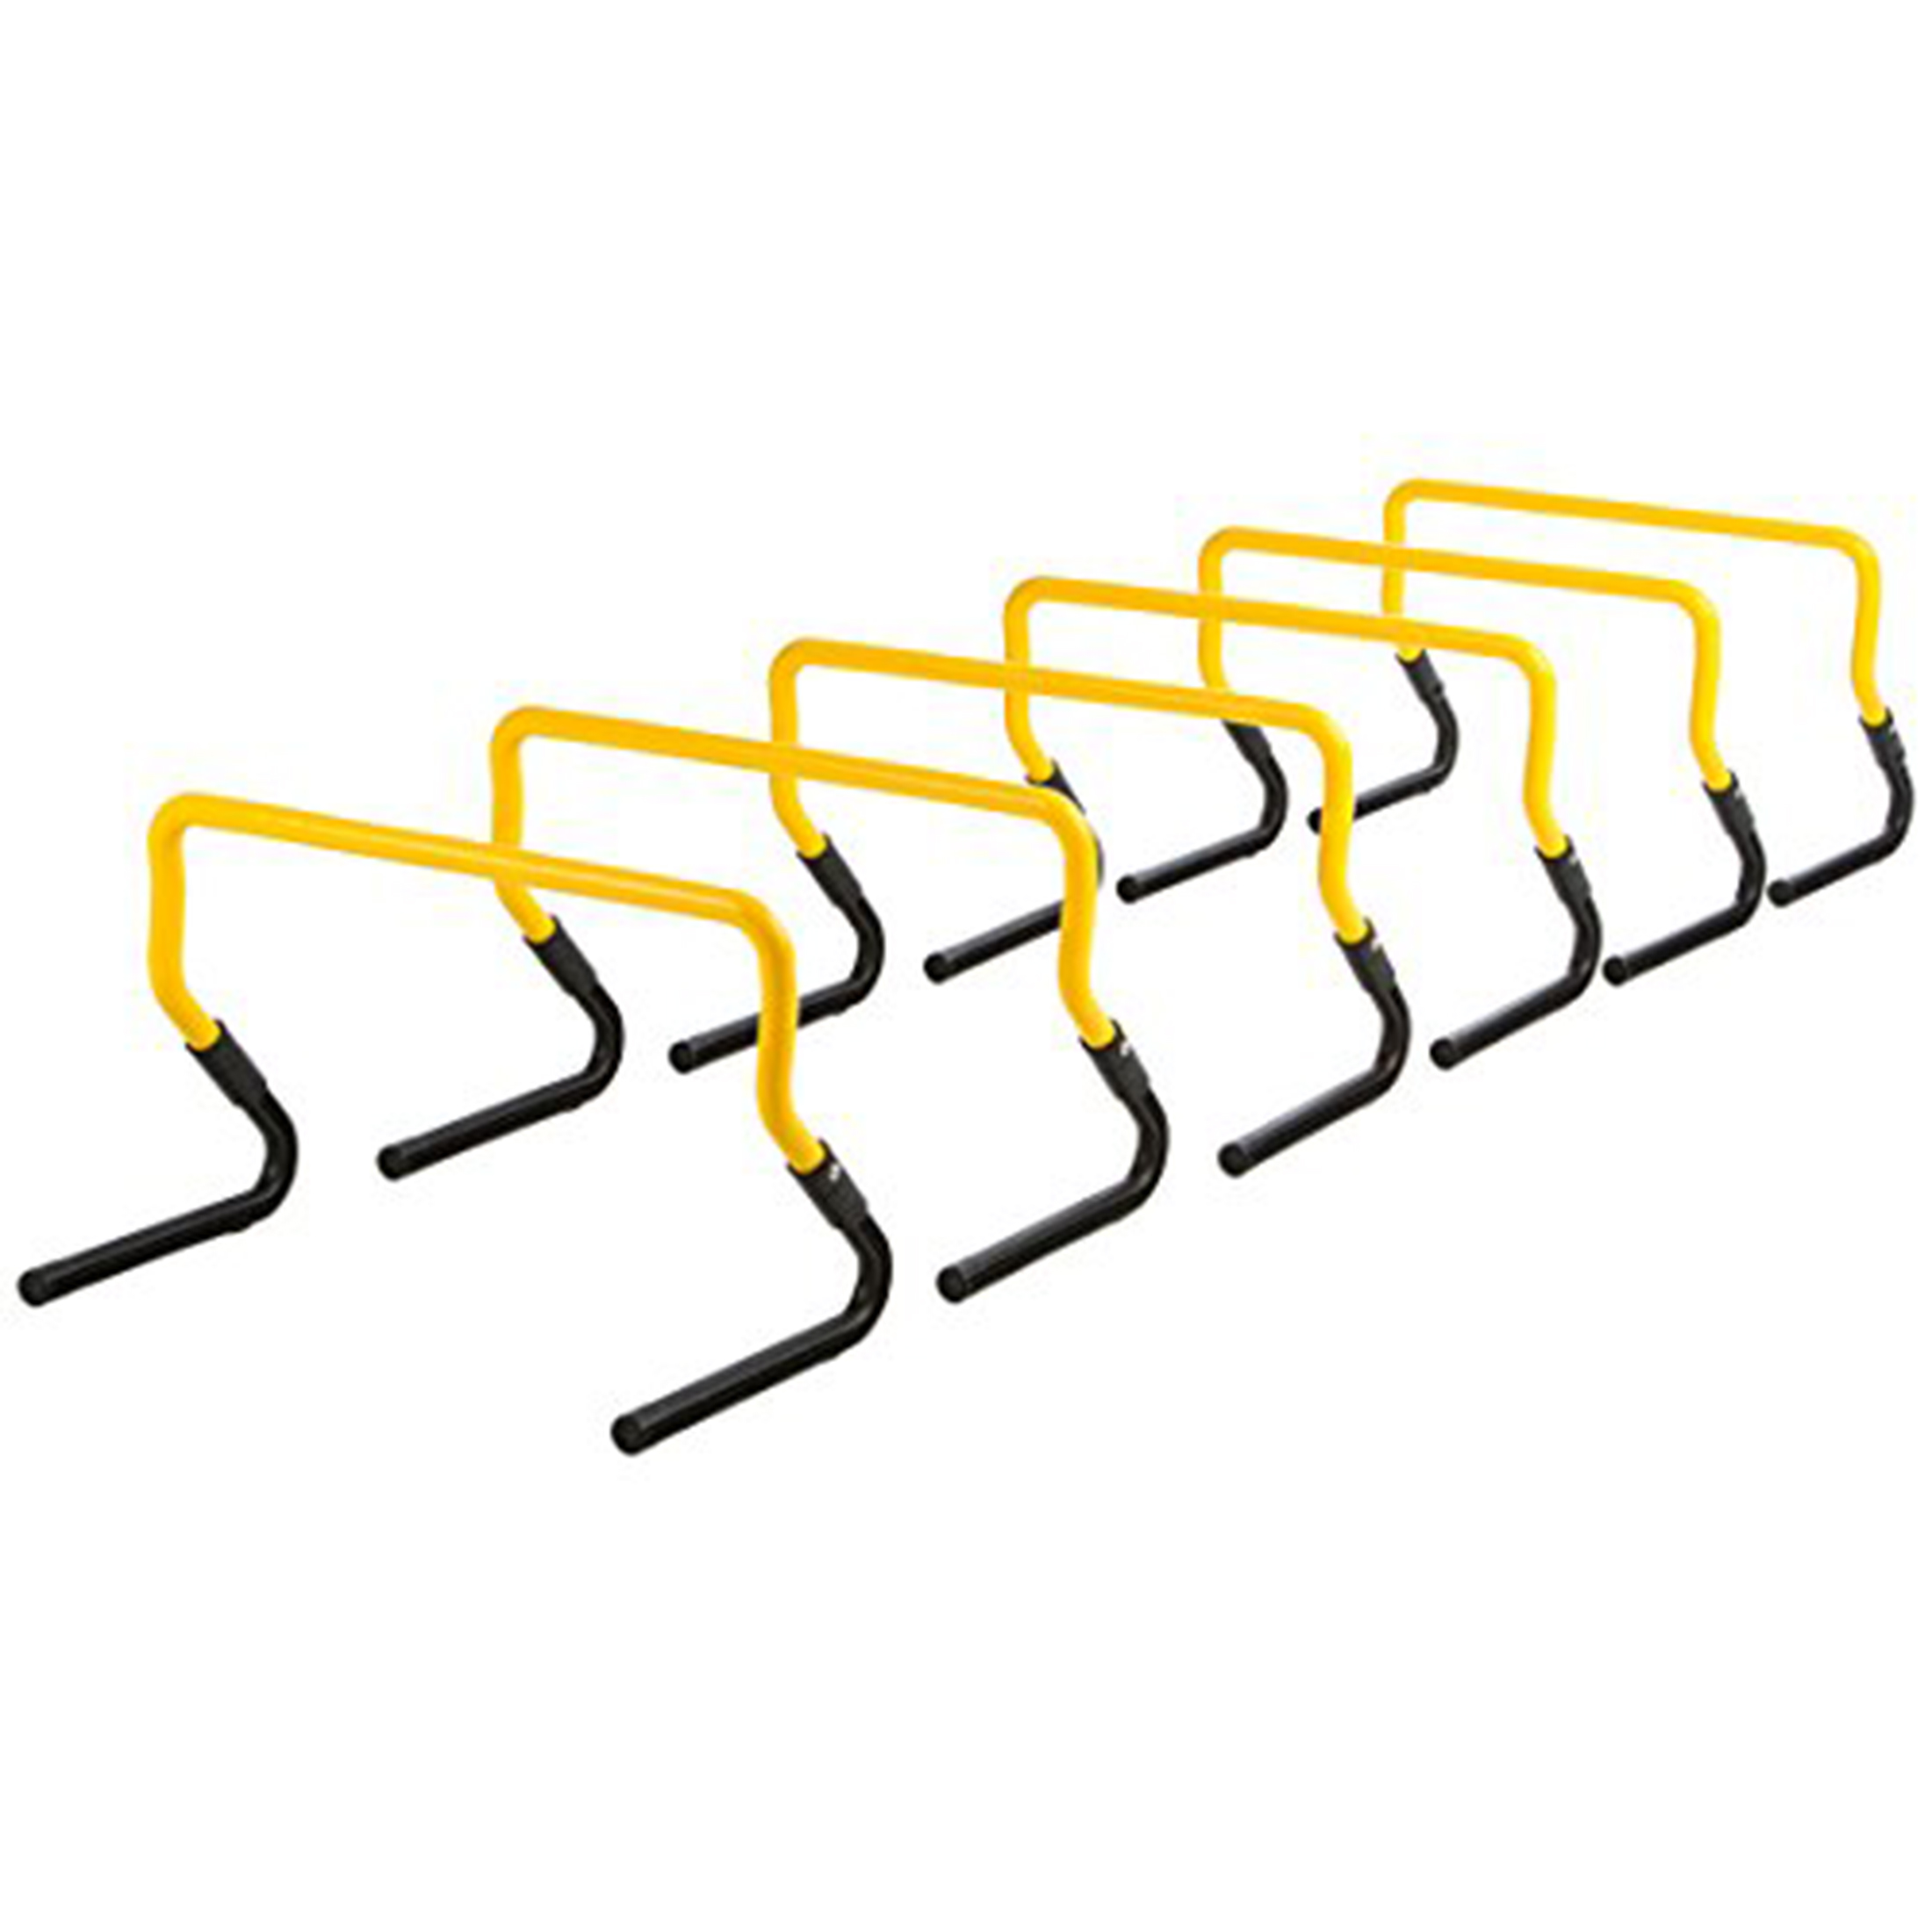 ZOOMYO Koordinationshürden, 6-teiliges Set, in nutzbar, Profitraining Hürdenset Koordinationsstangen, Gelb/Schwarz für zwei Höhen